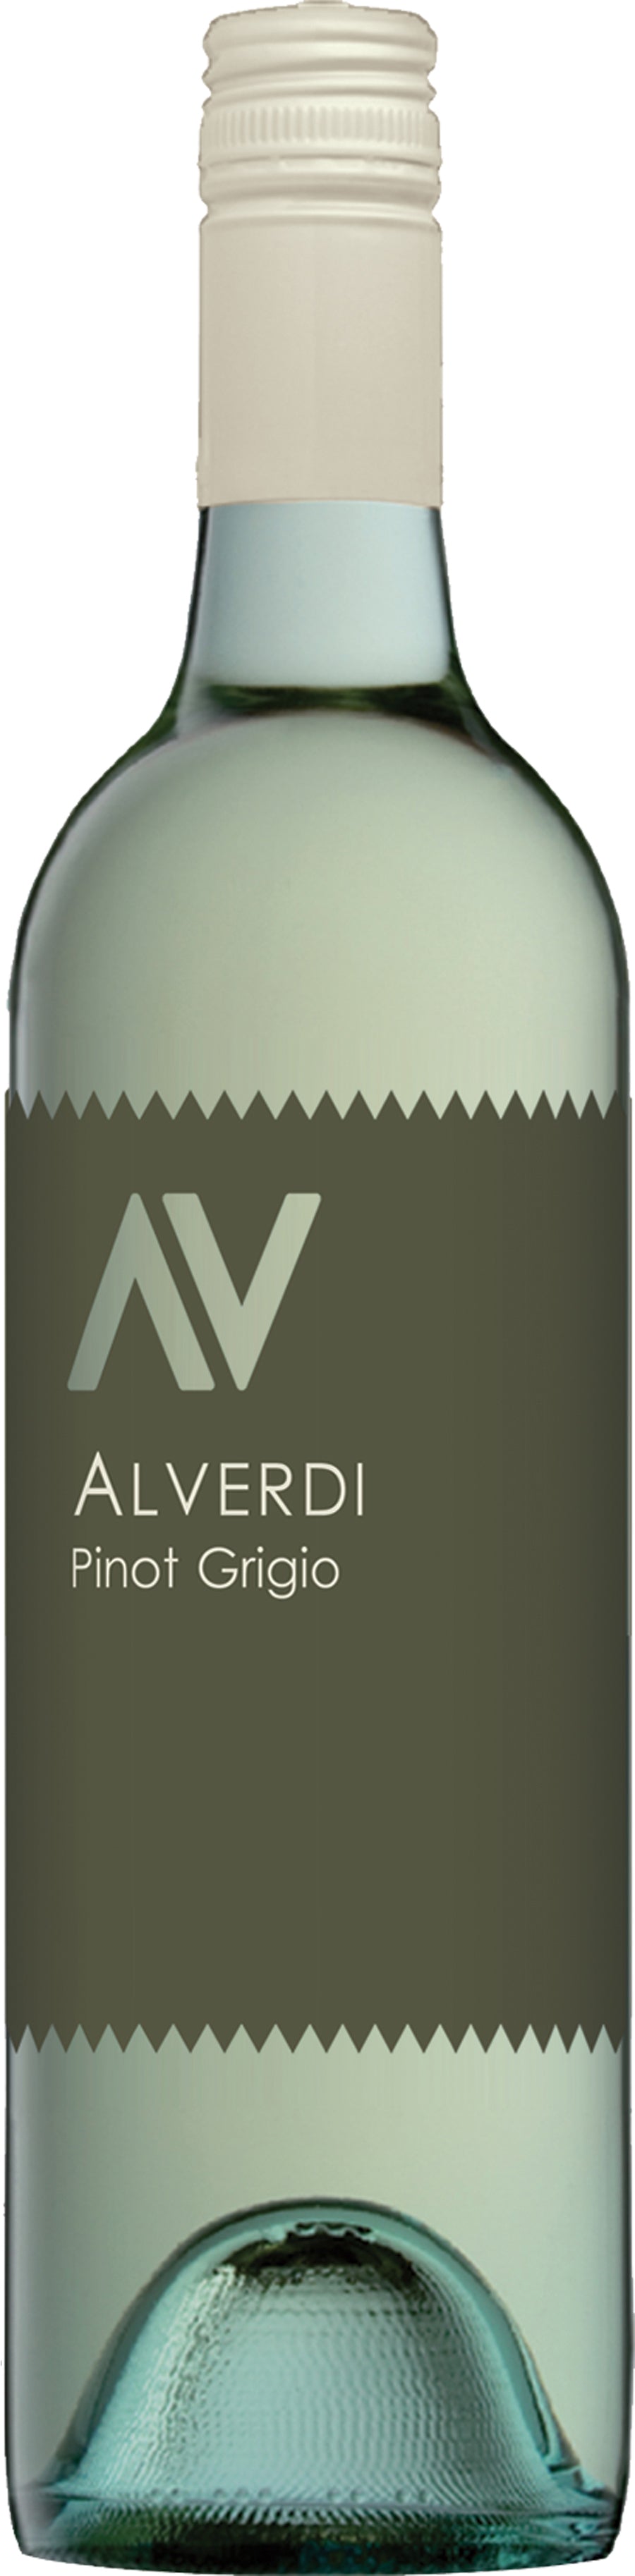 Alverdi Pinot Grigio 2017